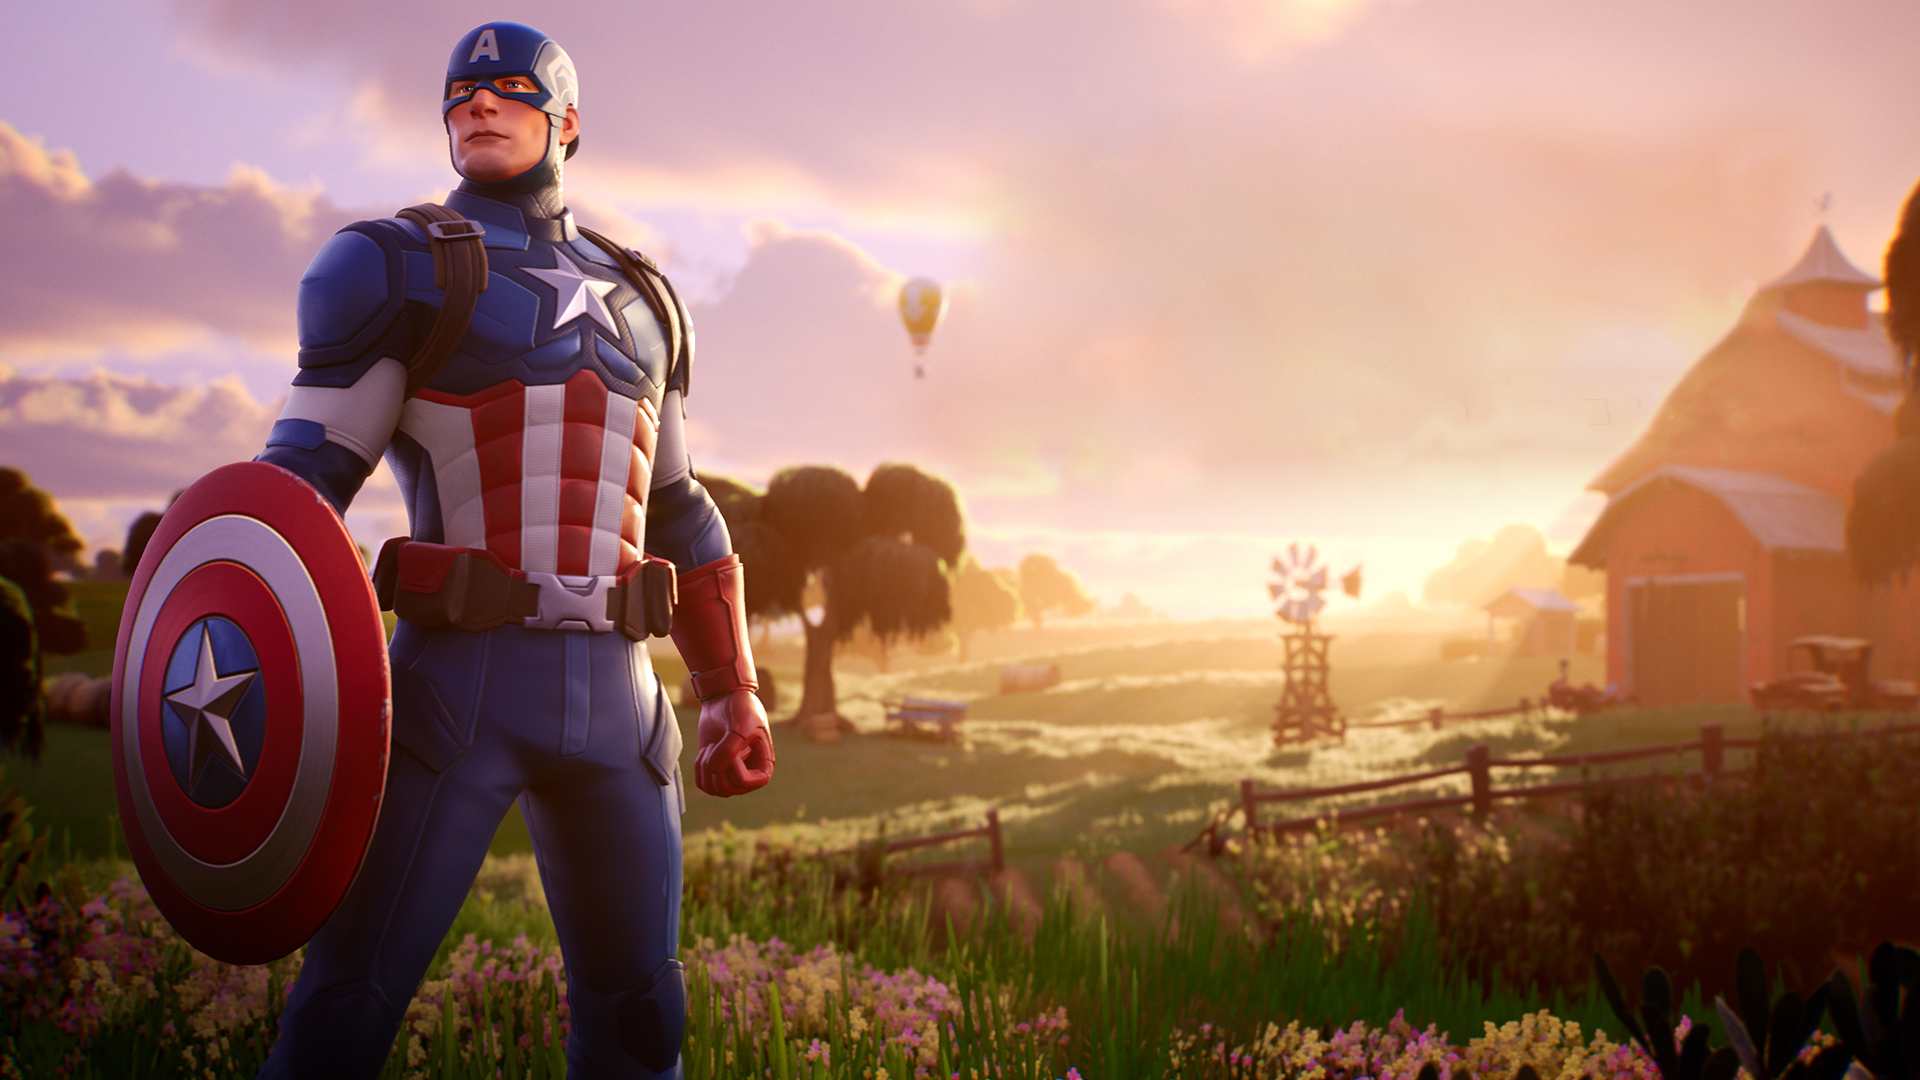 Captain America Fortnite Wallpaper, HD Games 4K Wallpapers, Images